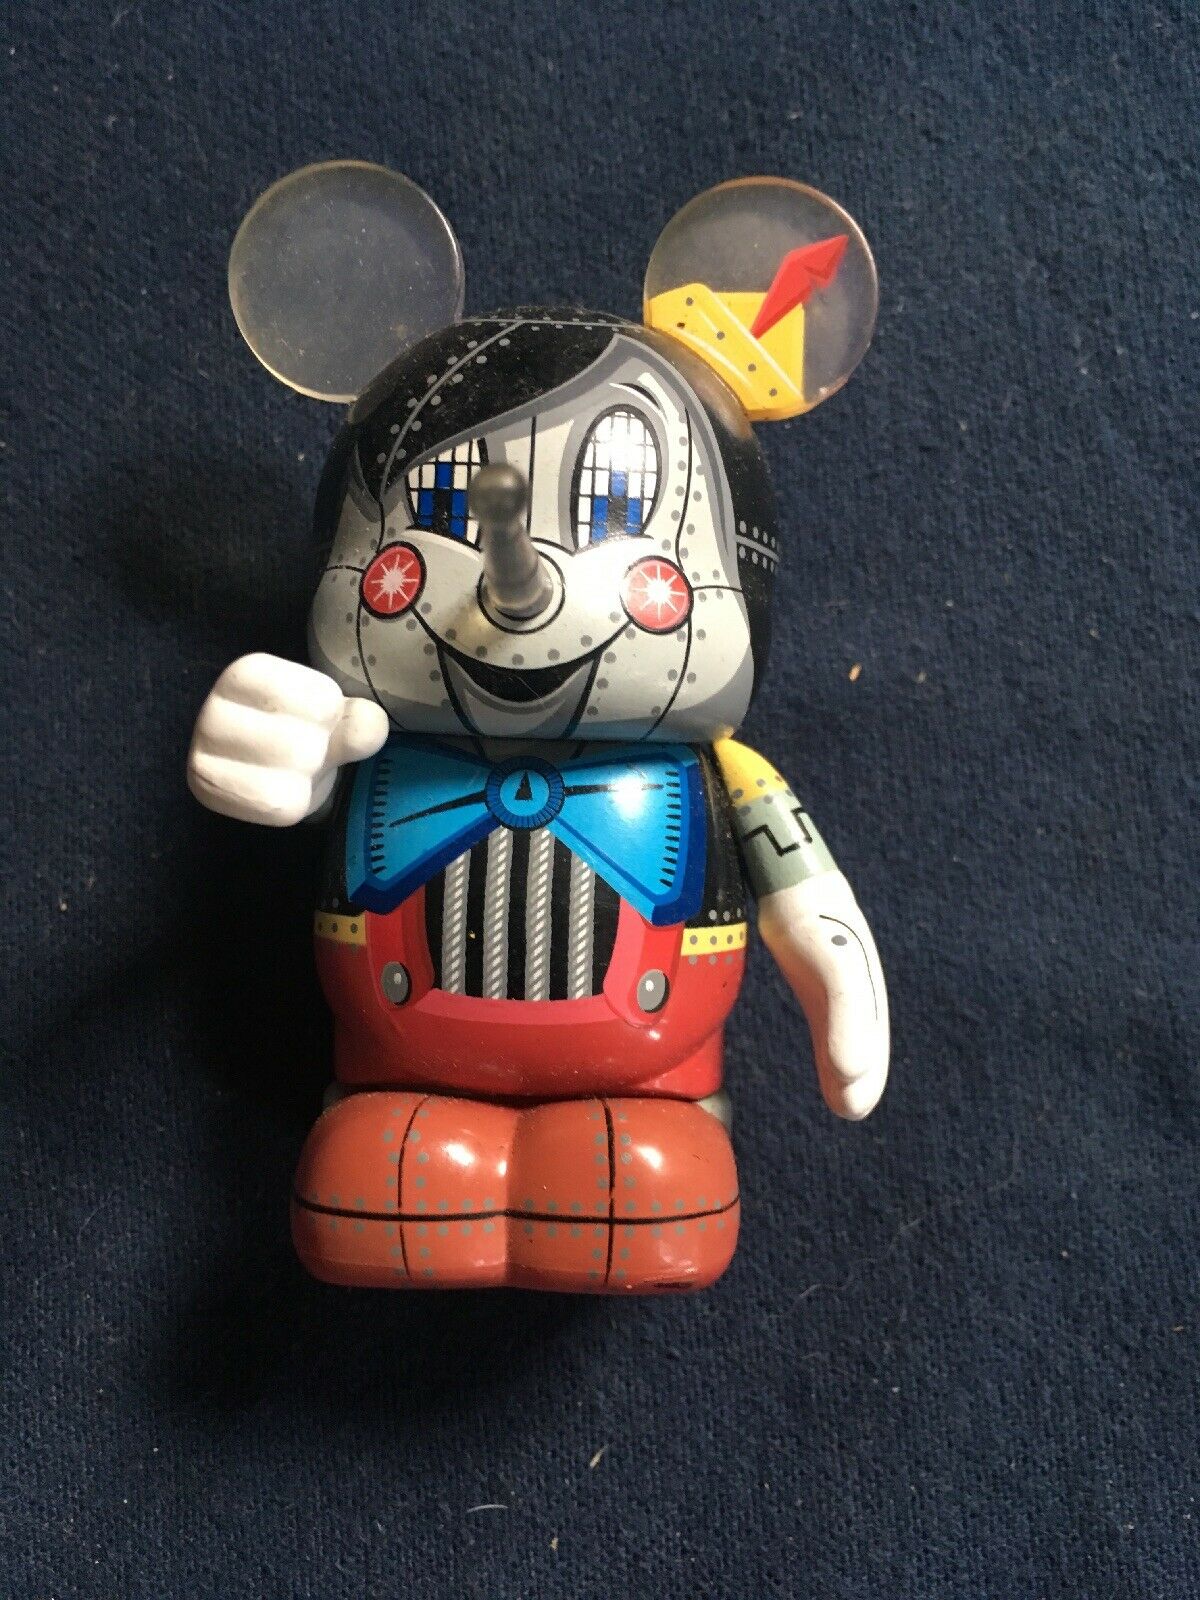 Disney Vinylmation - 2012 - Robot 3 - Pinocchio Bot - Enrique Pita